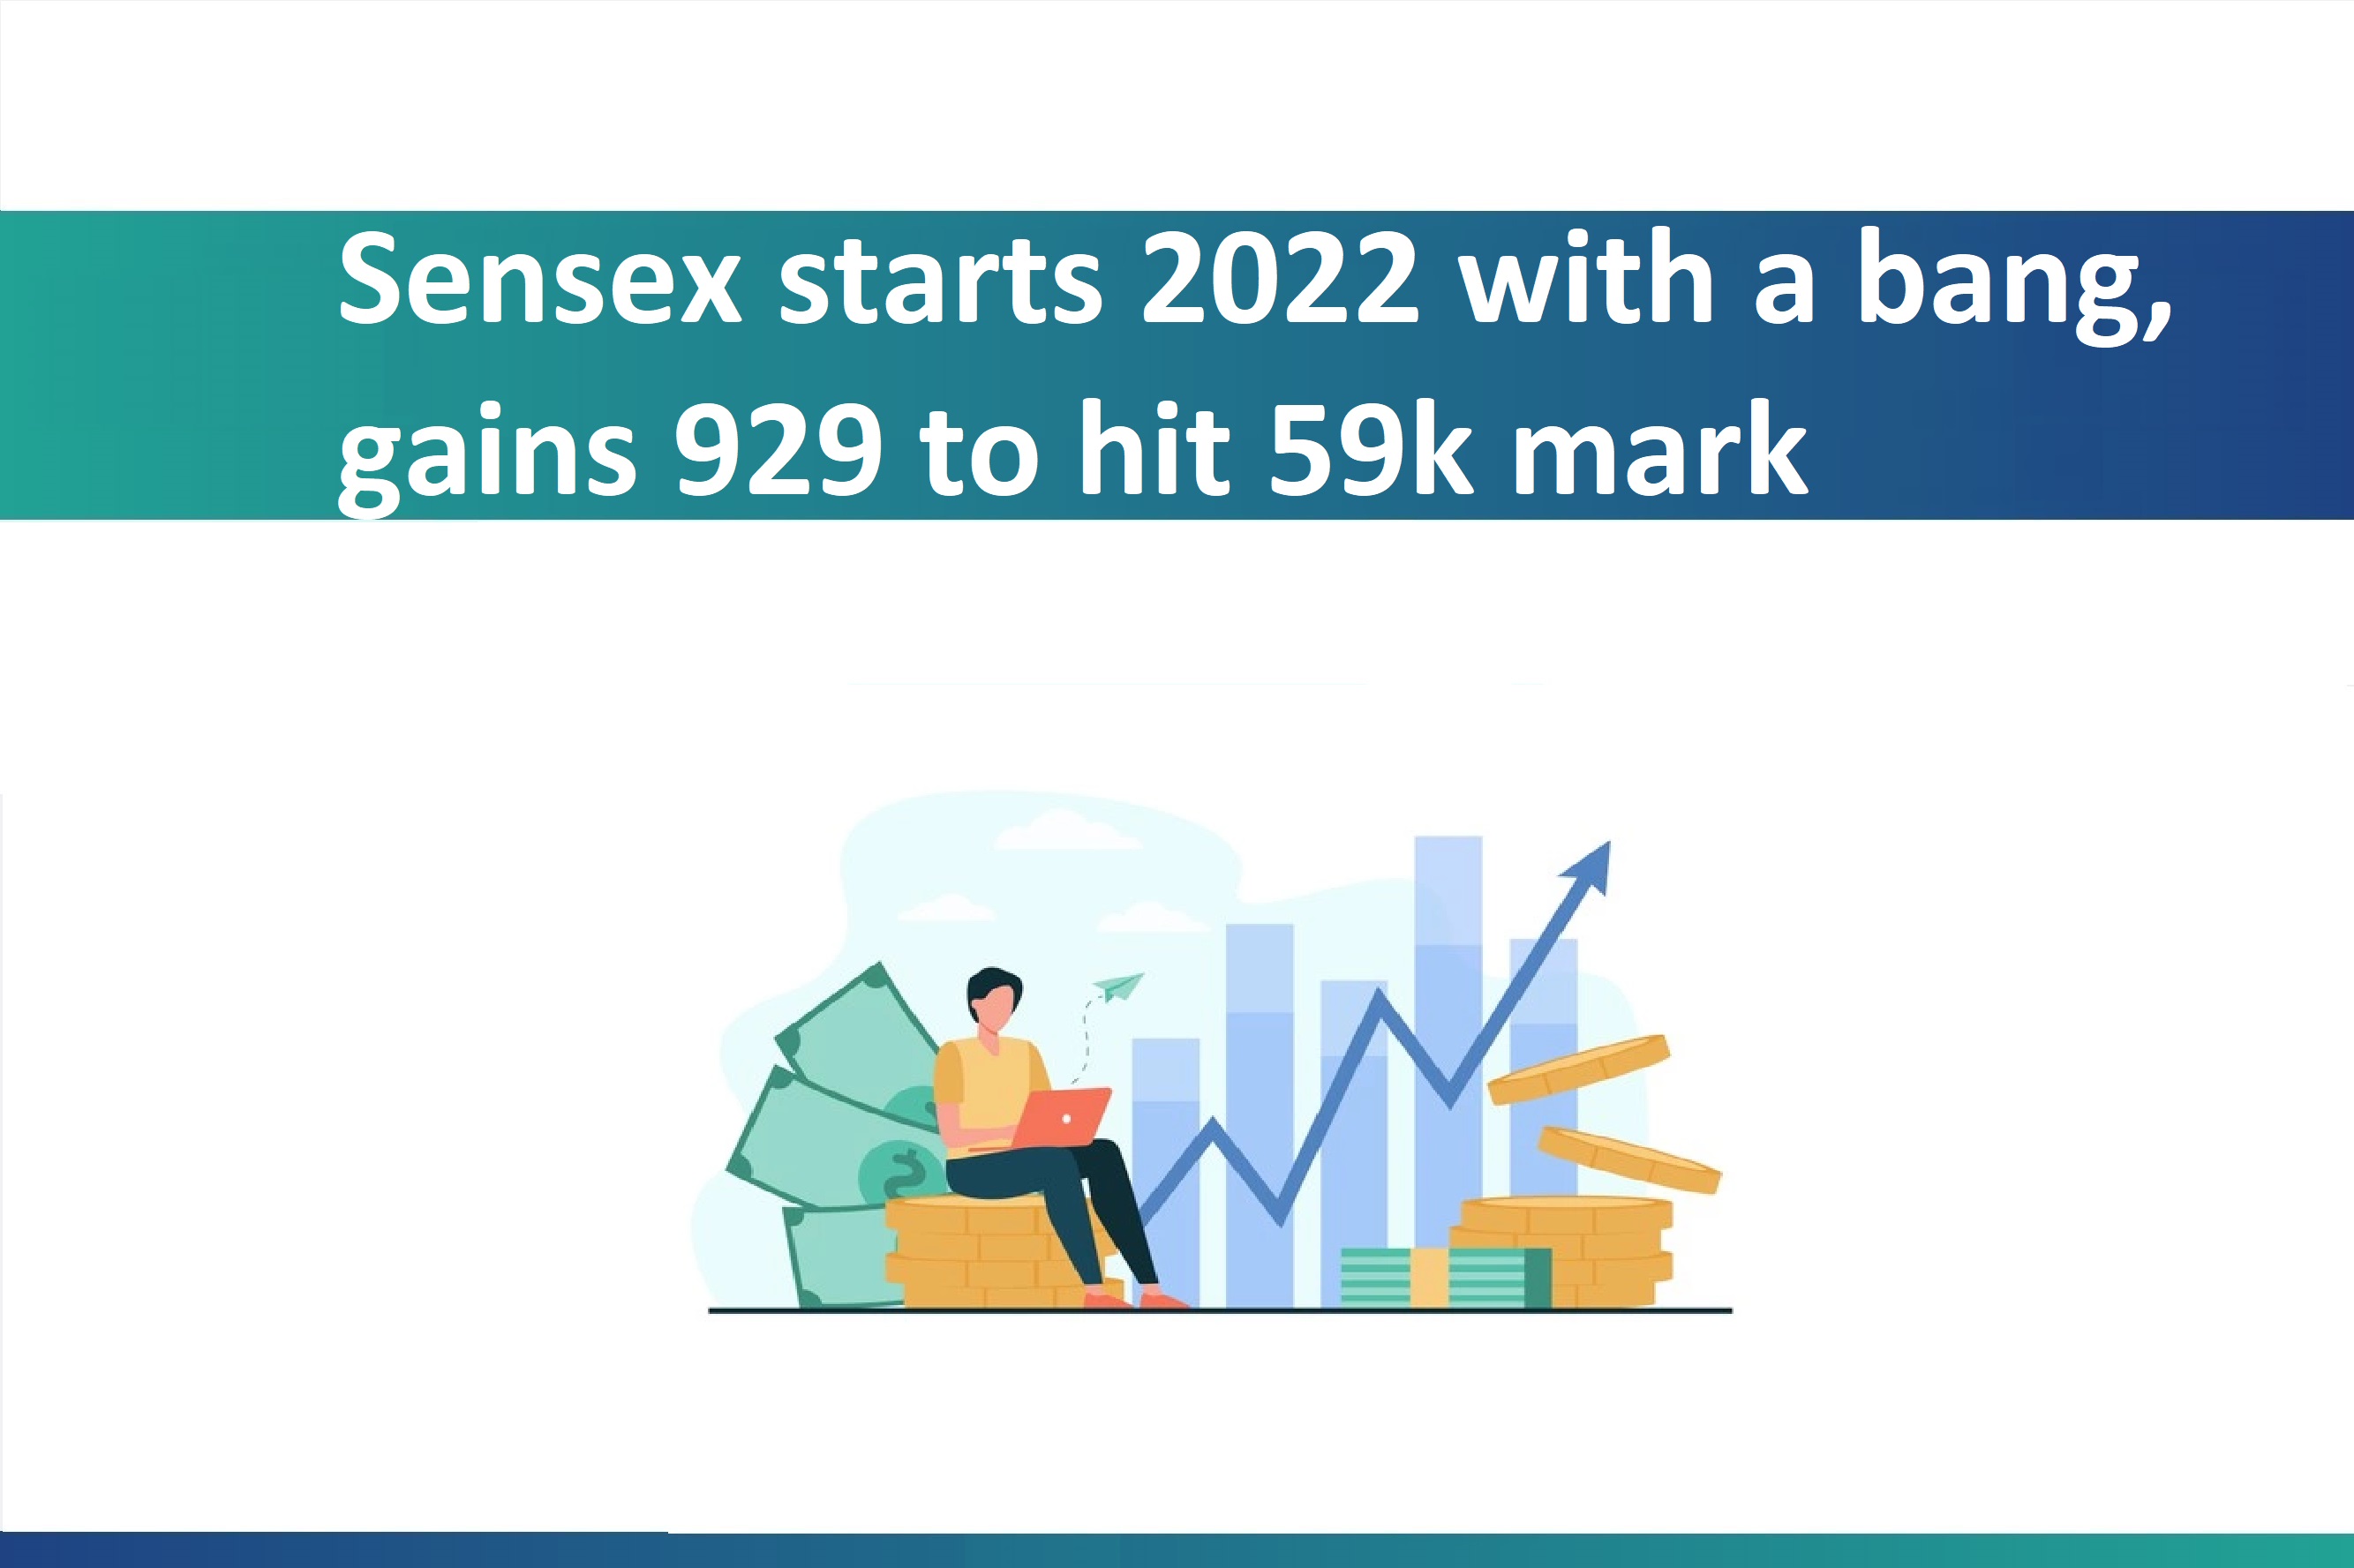 Sensex starts 2022 with a bang, gains 929 to hit 59k mark